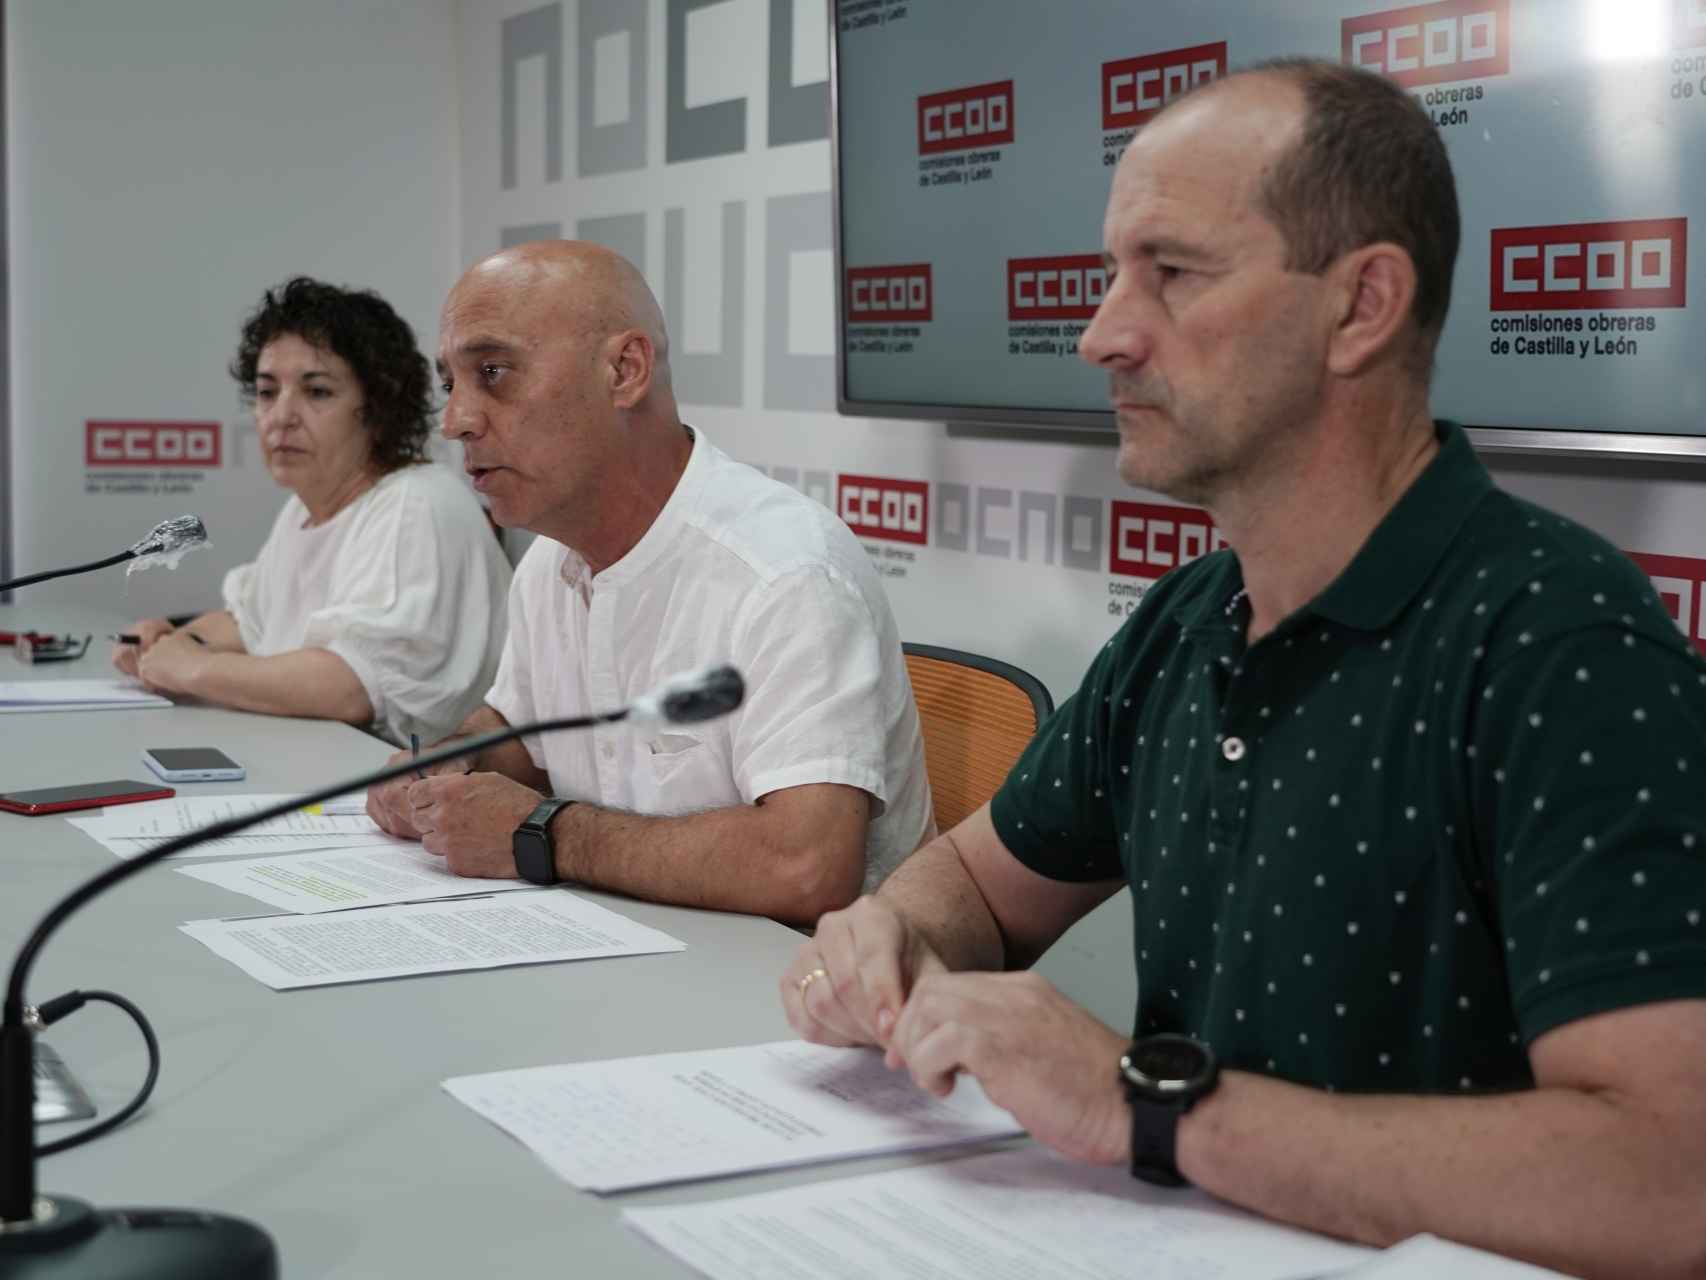 El coordinador de incendios de la Federación de Servicios a la Ciudadanía de CCOO Castilla y León, Ernesto Angulo, en una imagen de archivo.